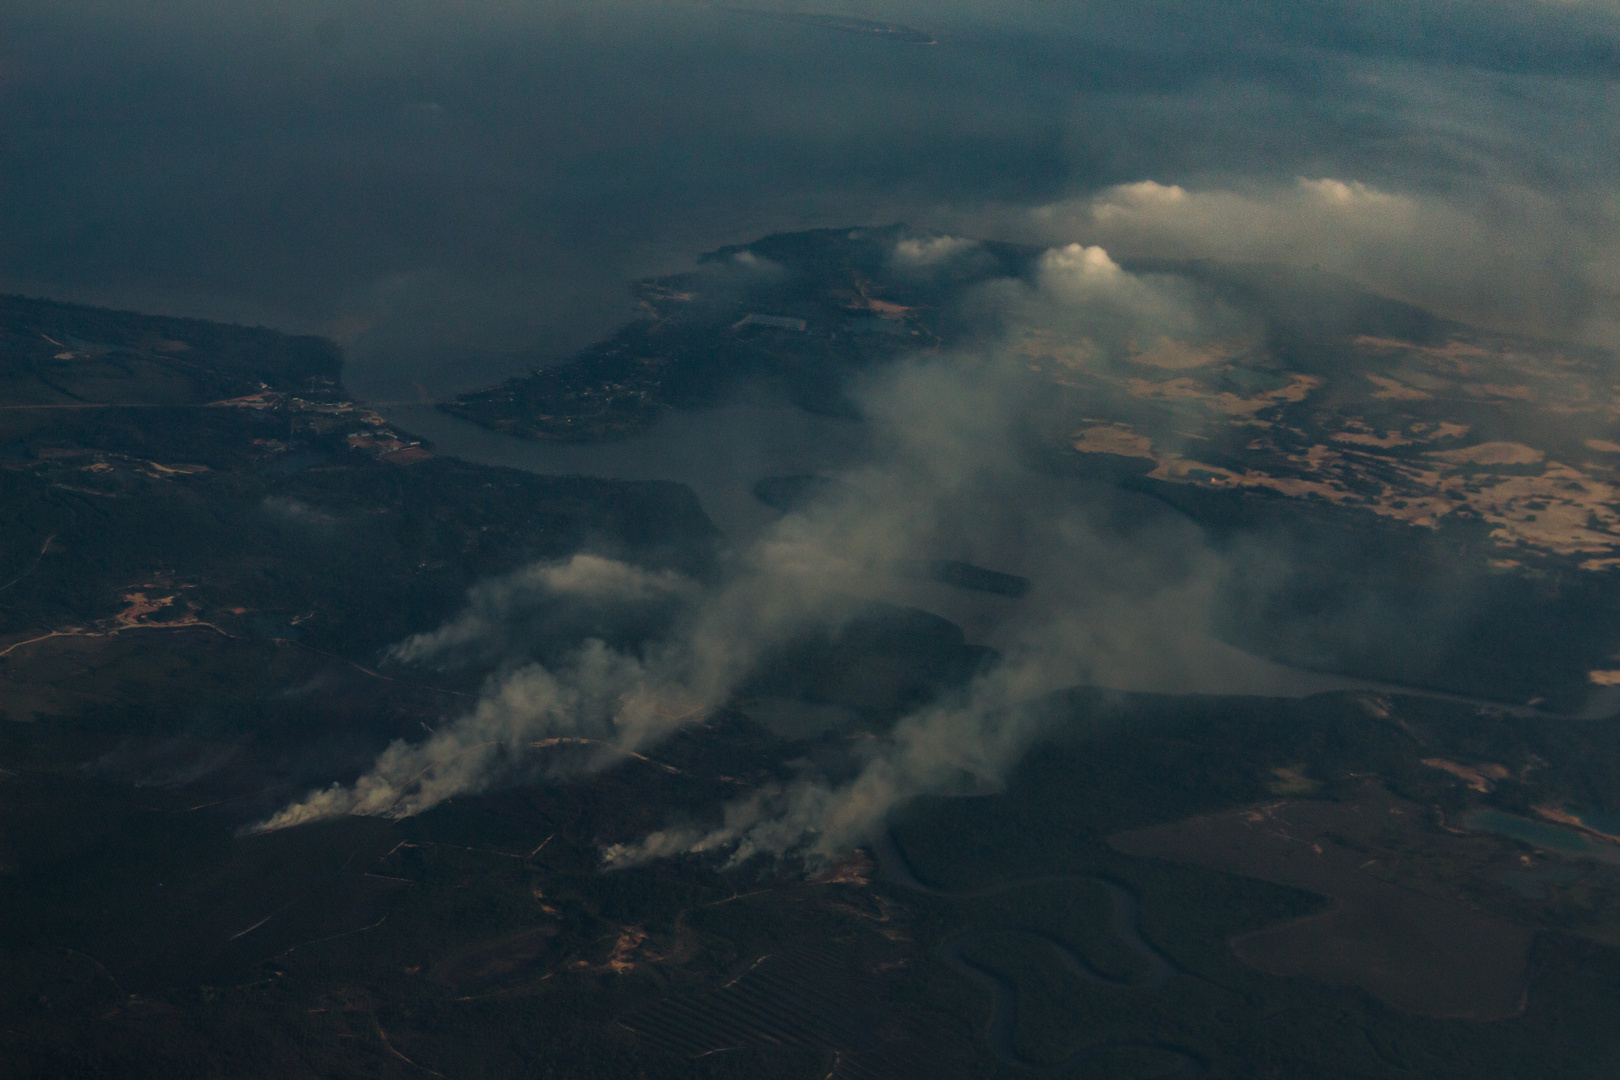 Bushfires in Indonesia